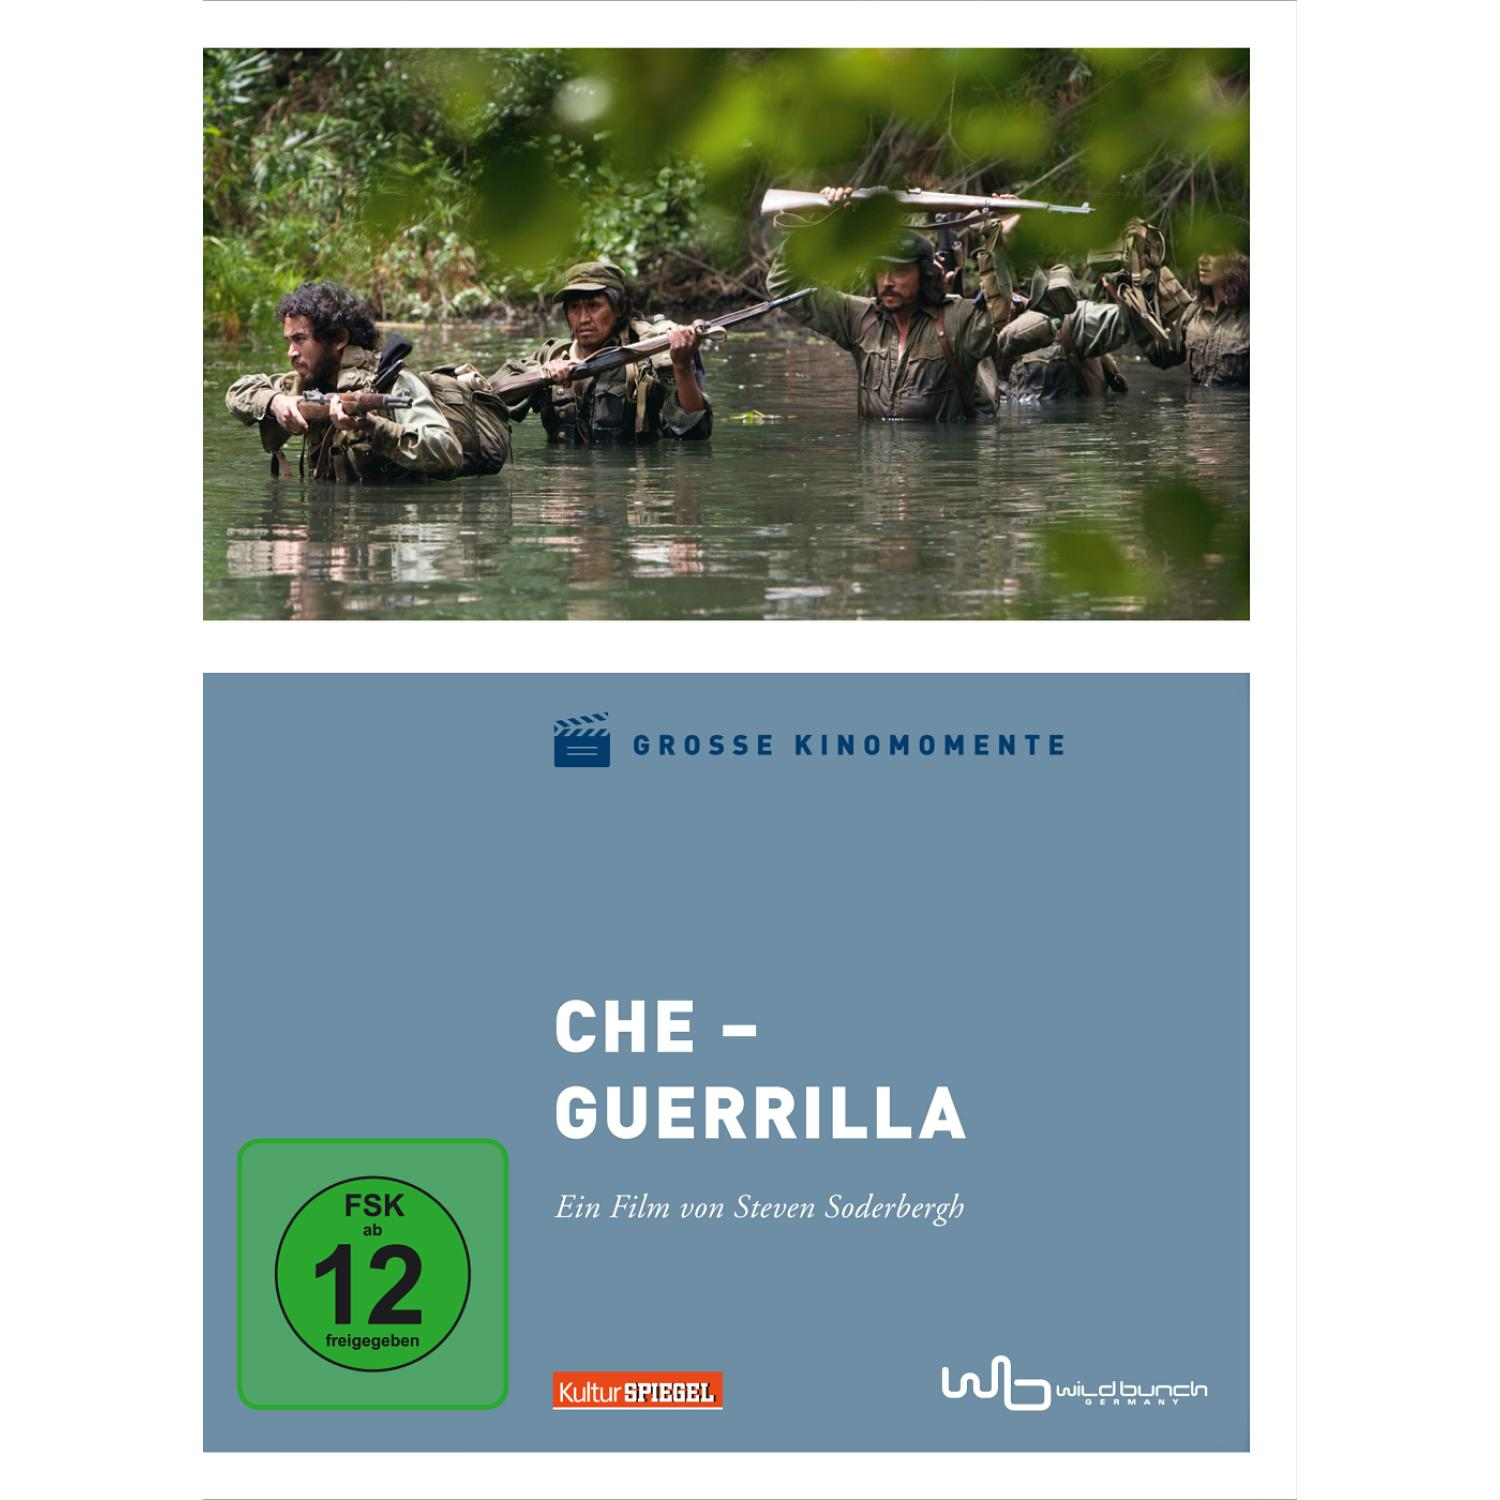 CHE-2 GUERRILLA (GROSSE DVD 2) KINOMOMENTE